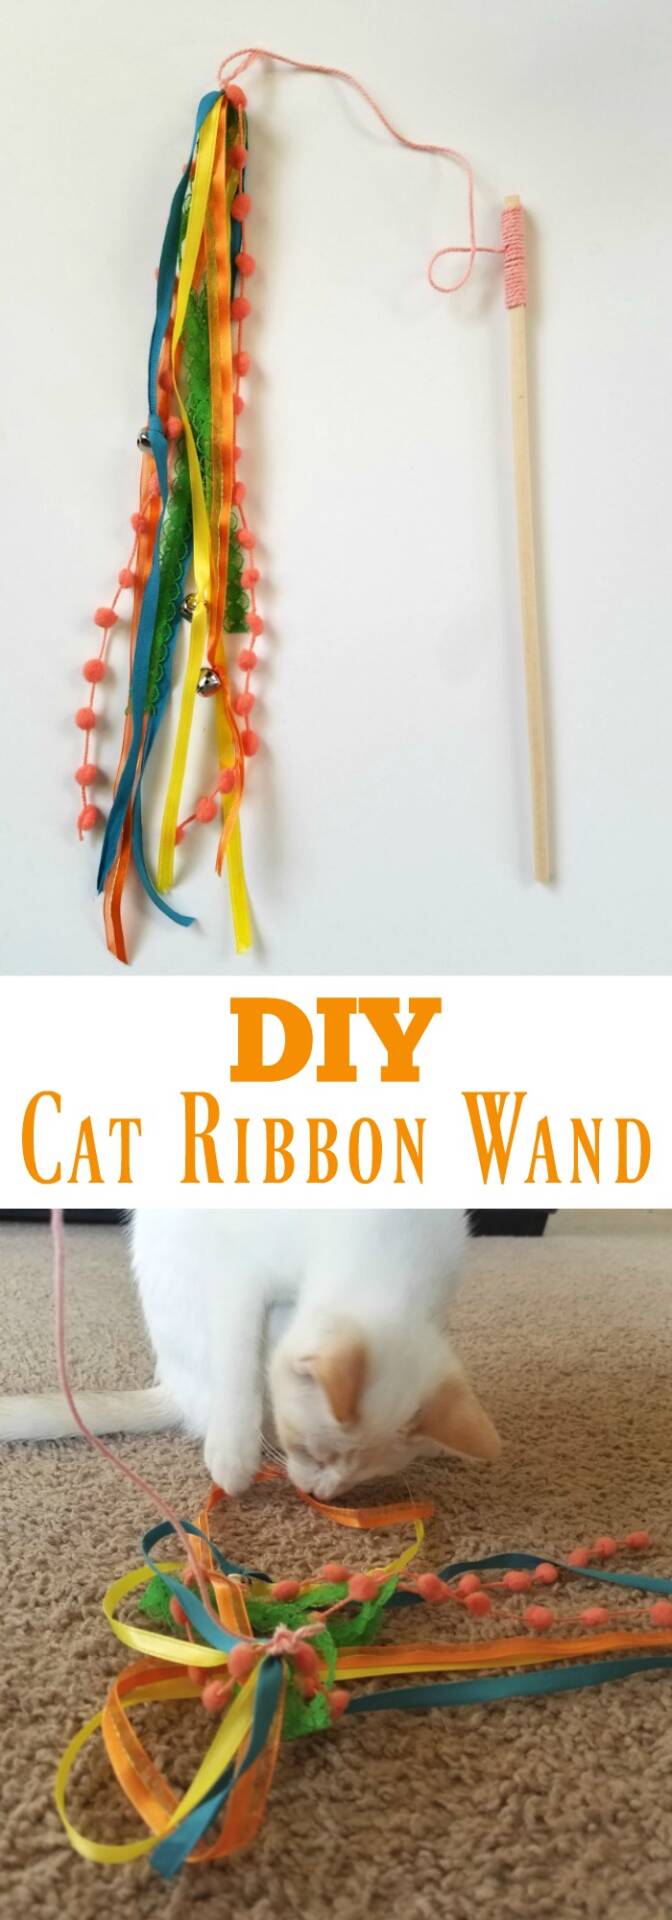 DIY Cat Ribbon Wand